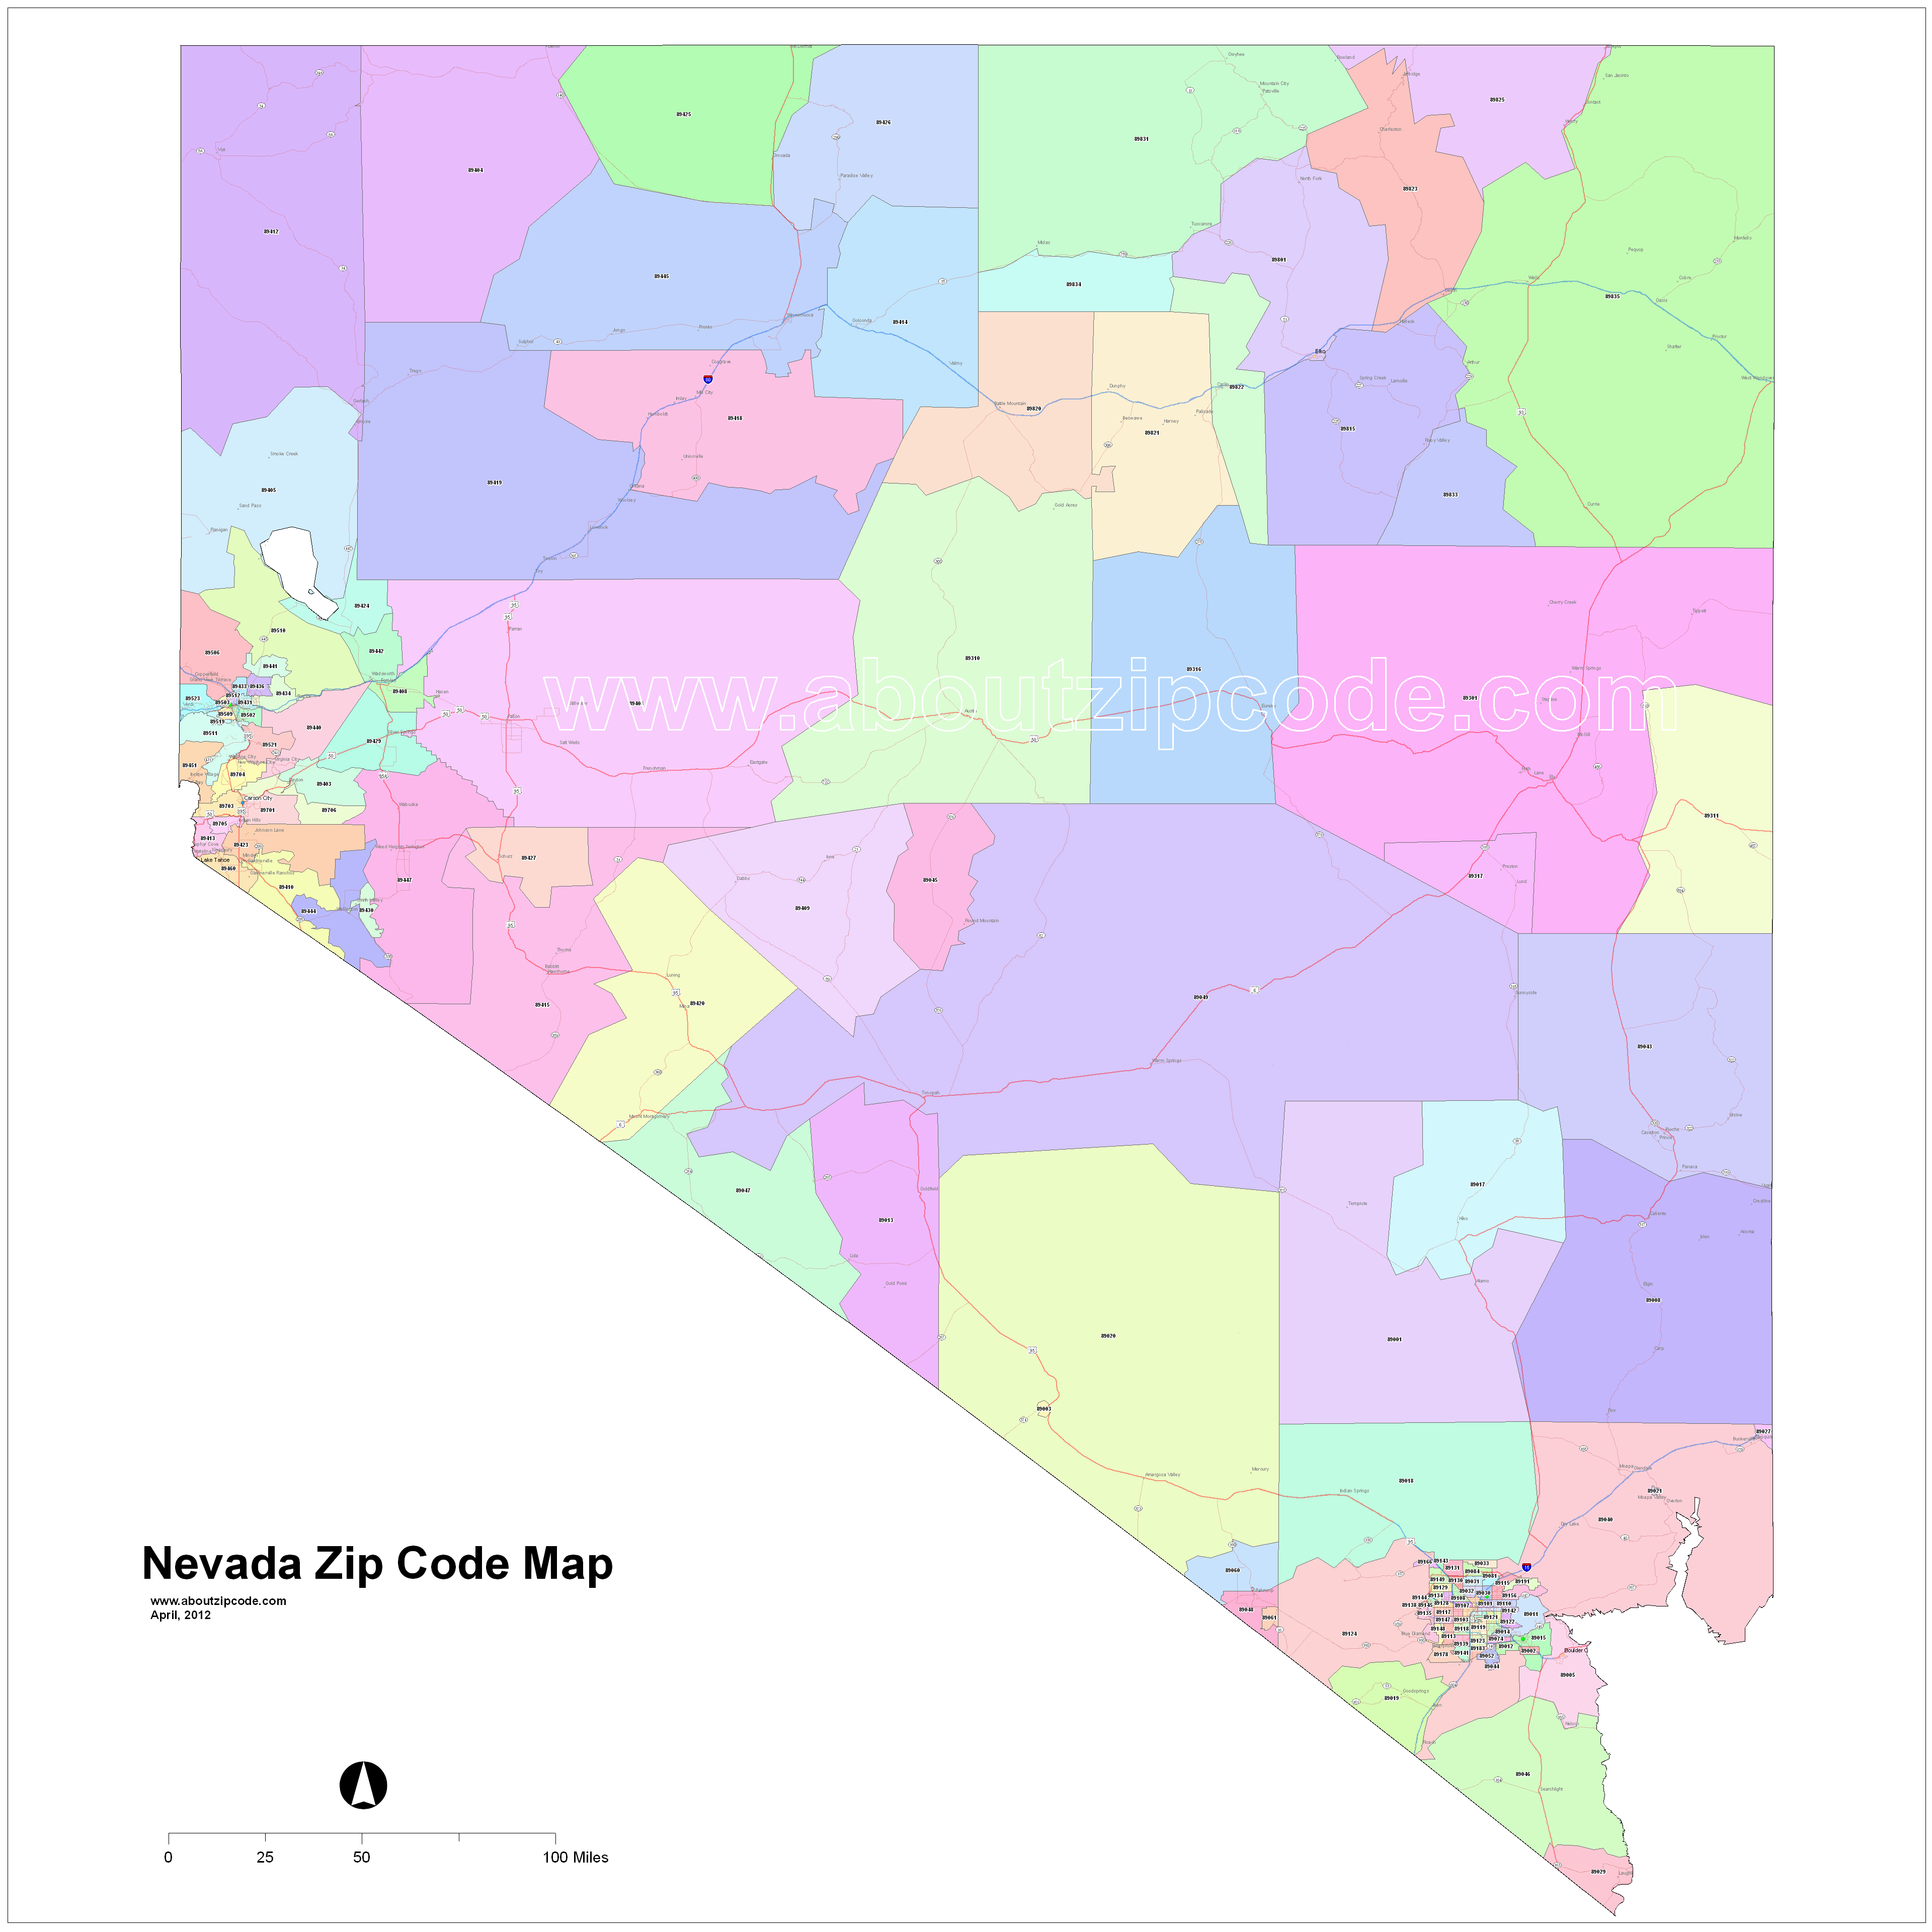 Nevada Zip Code Maps Free Nevada Zip Code Maps 3213